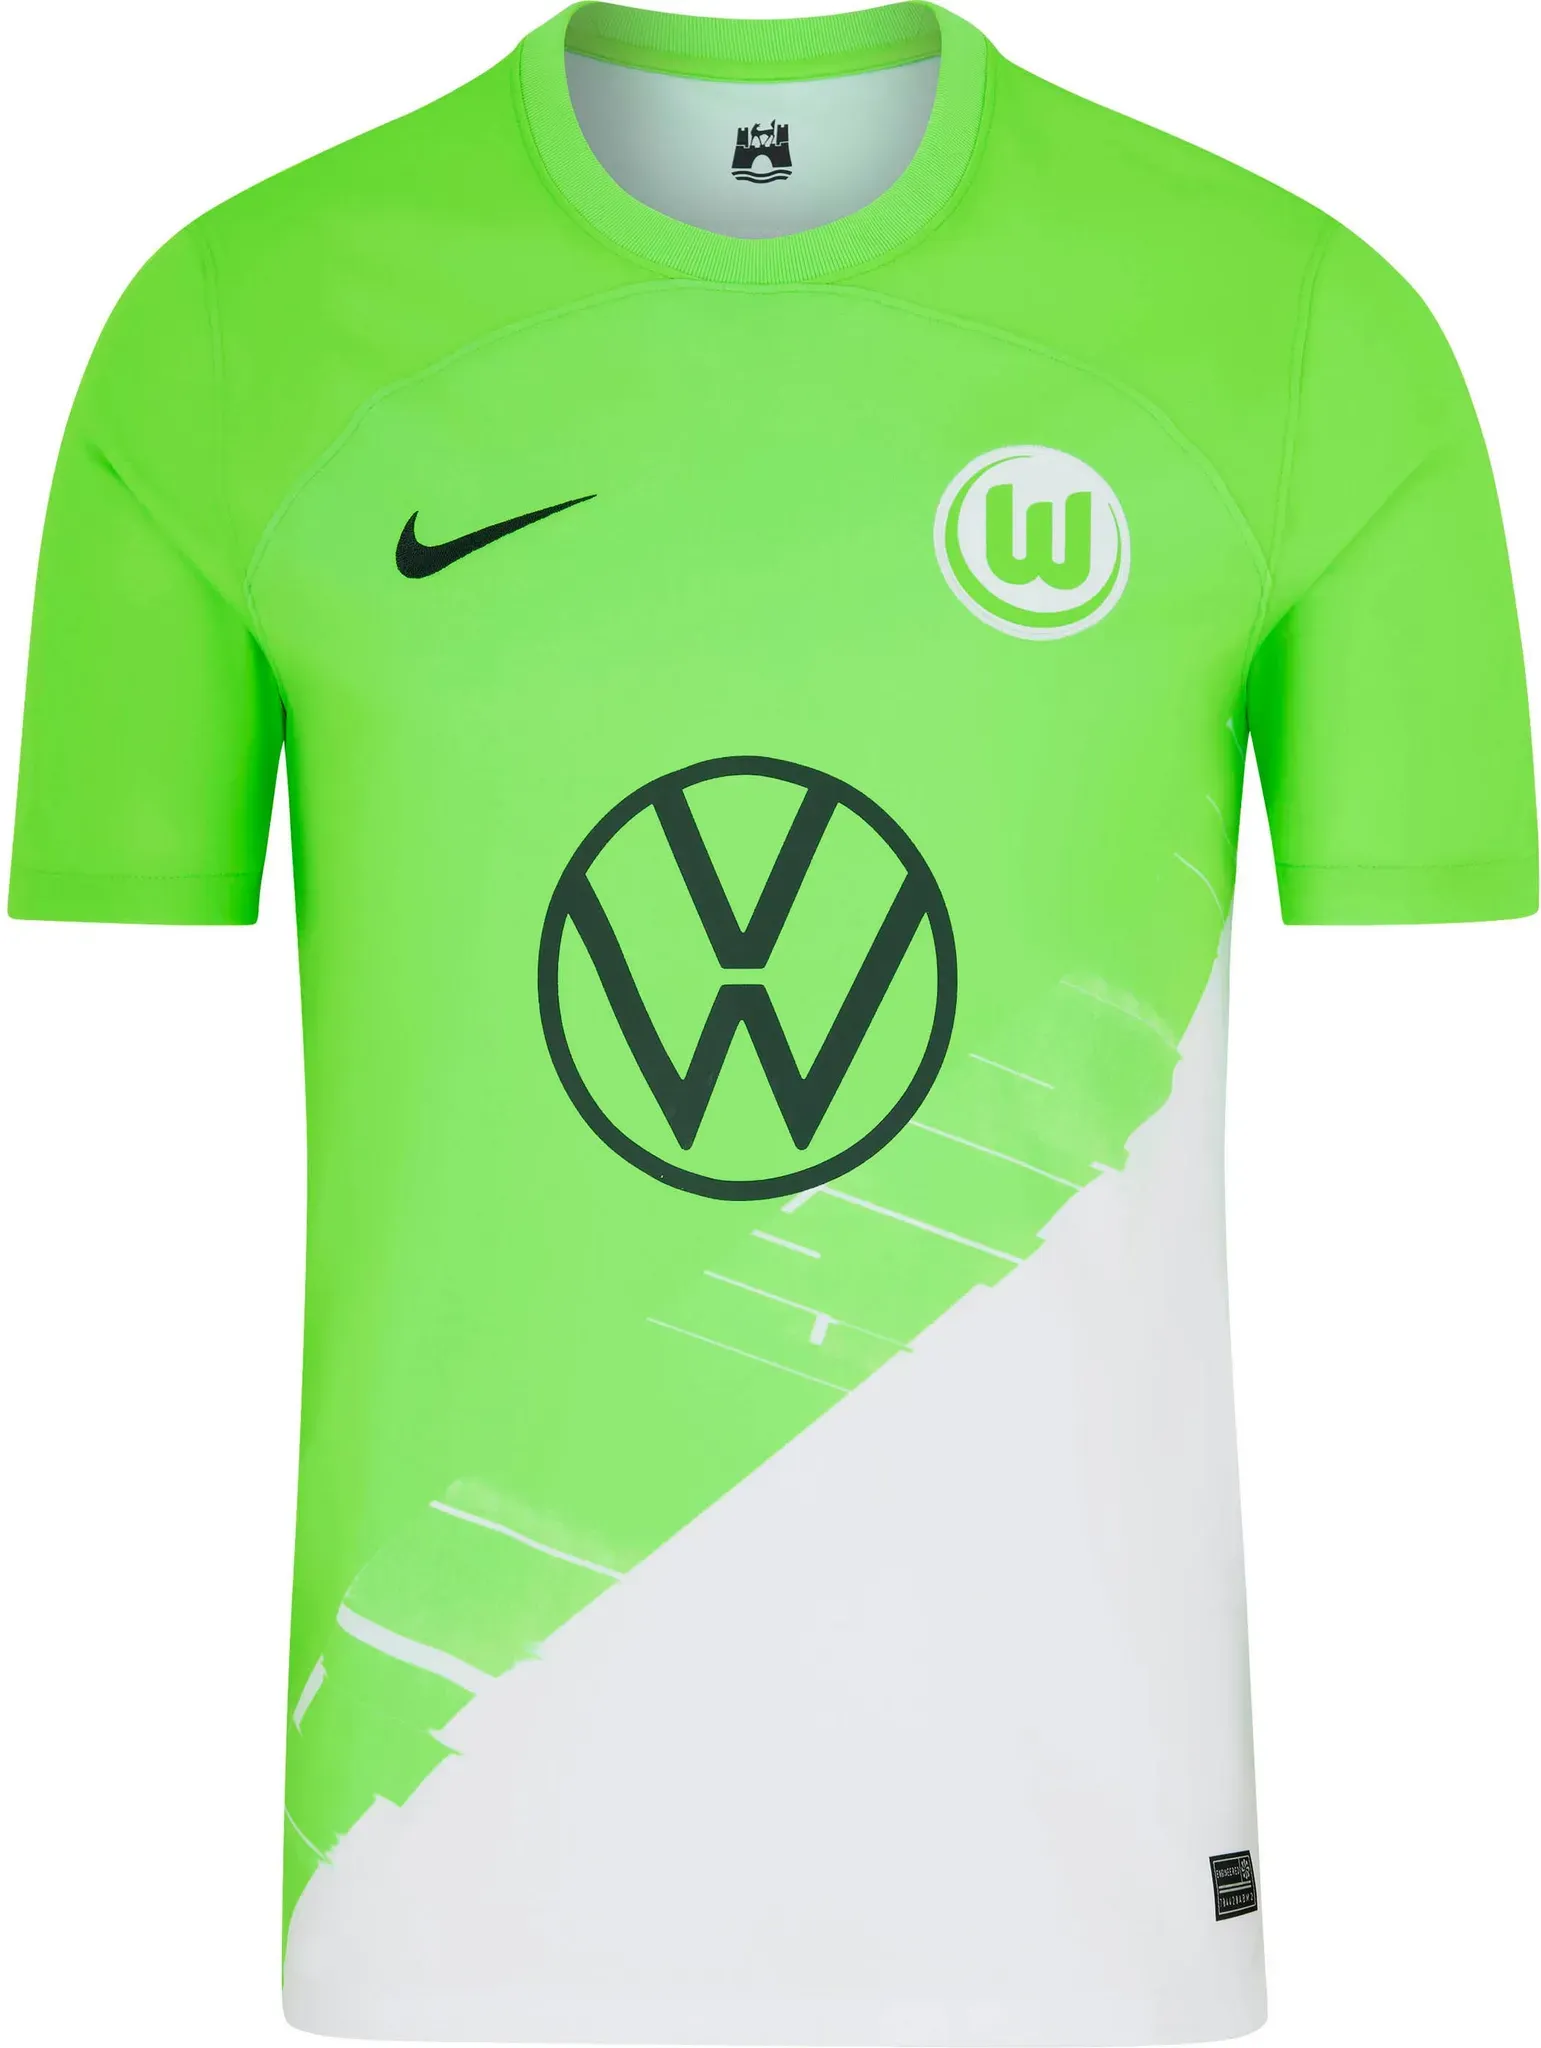 Nike VFL Wolfsburg 23-24 Heim Teamtrikot Herren in sub lime-anthracite, Größe S - grün